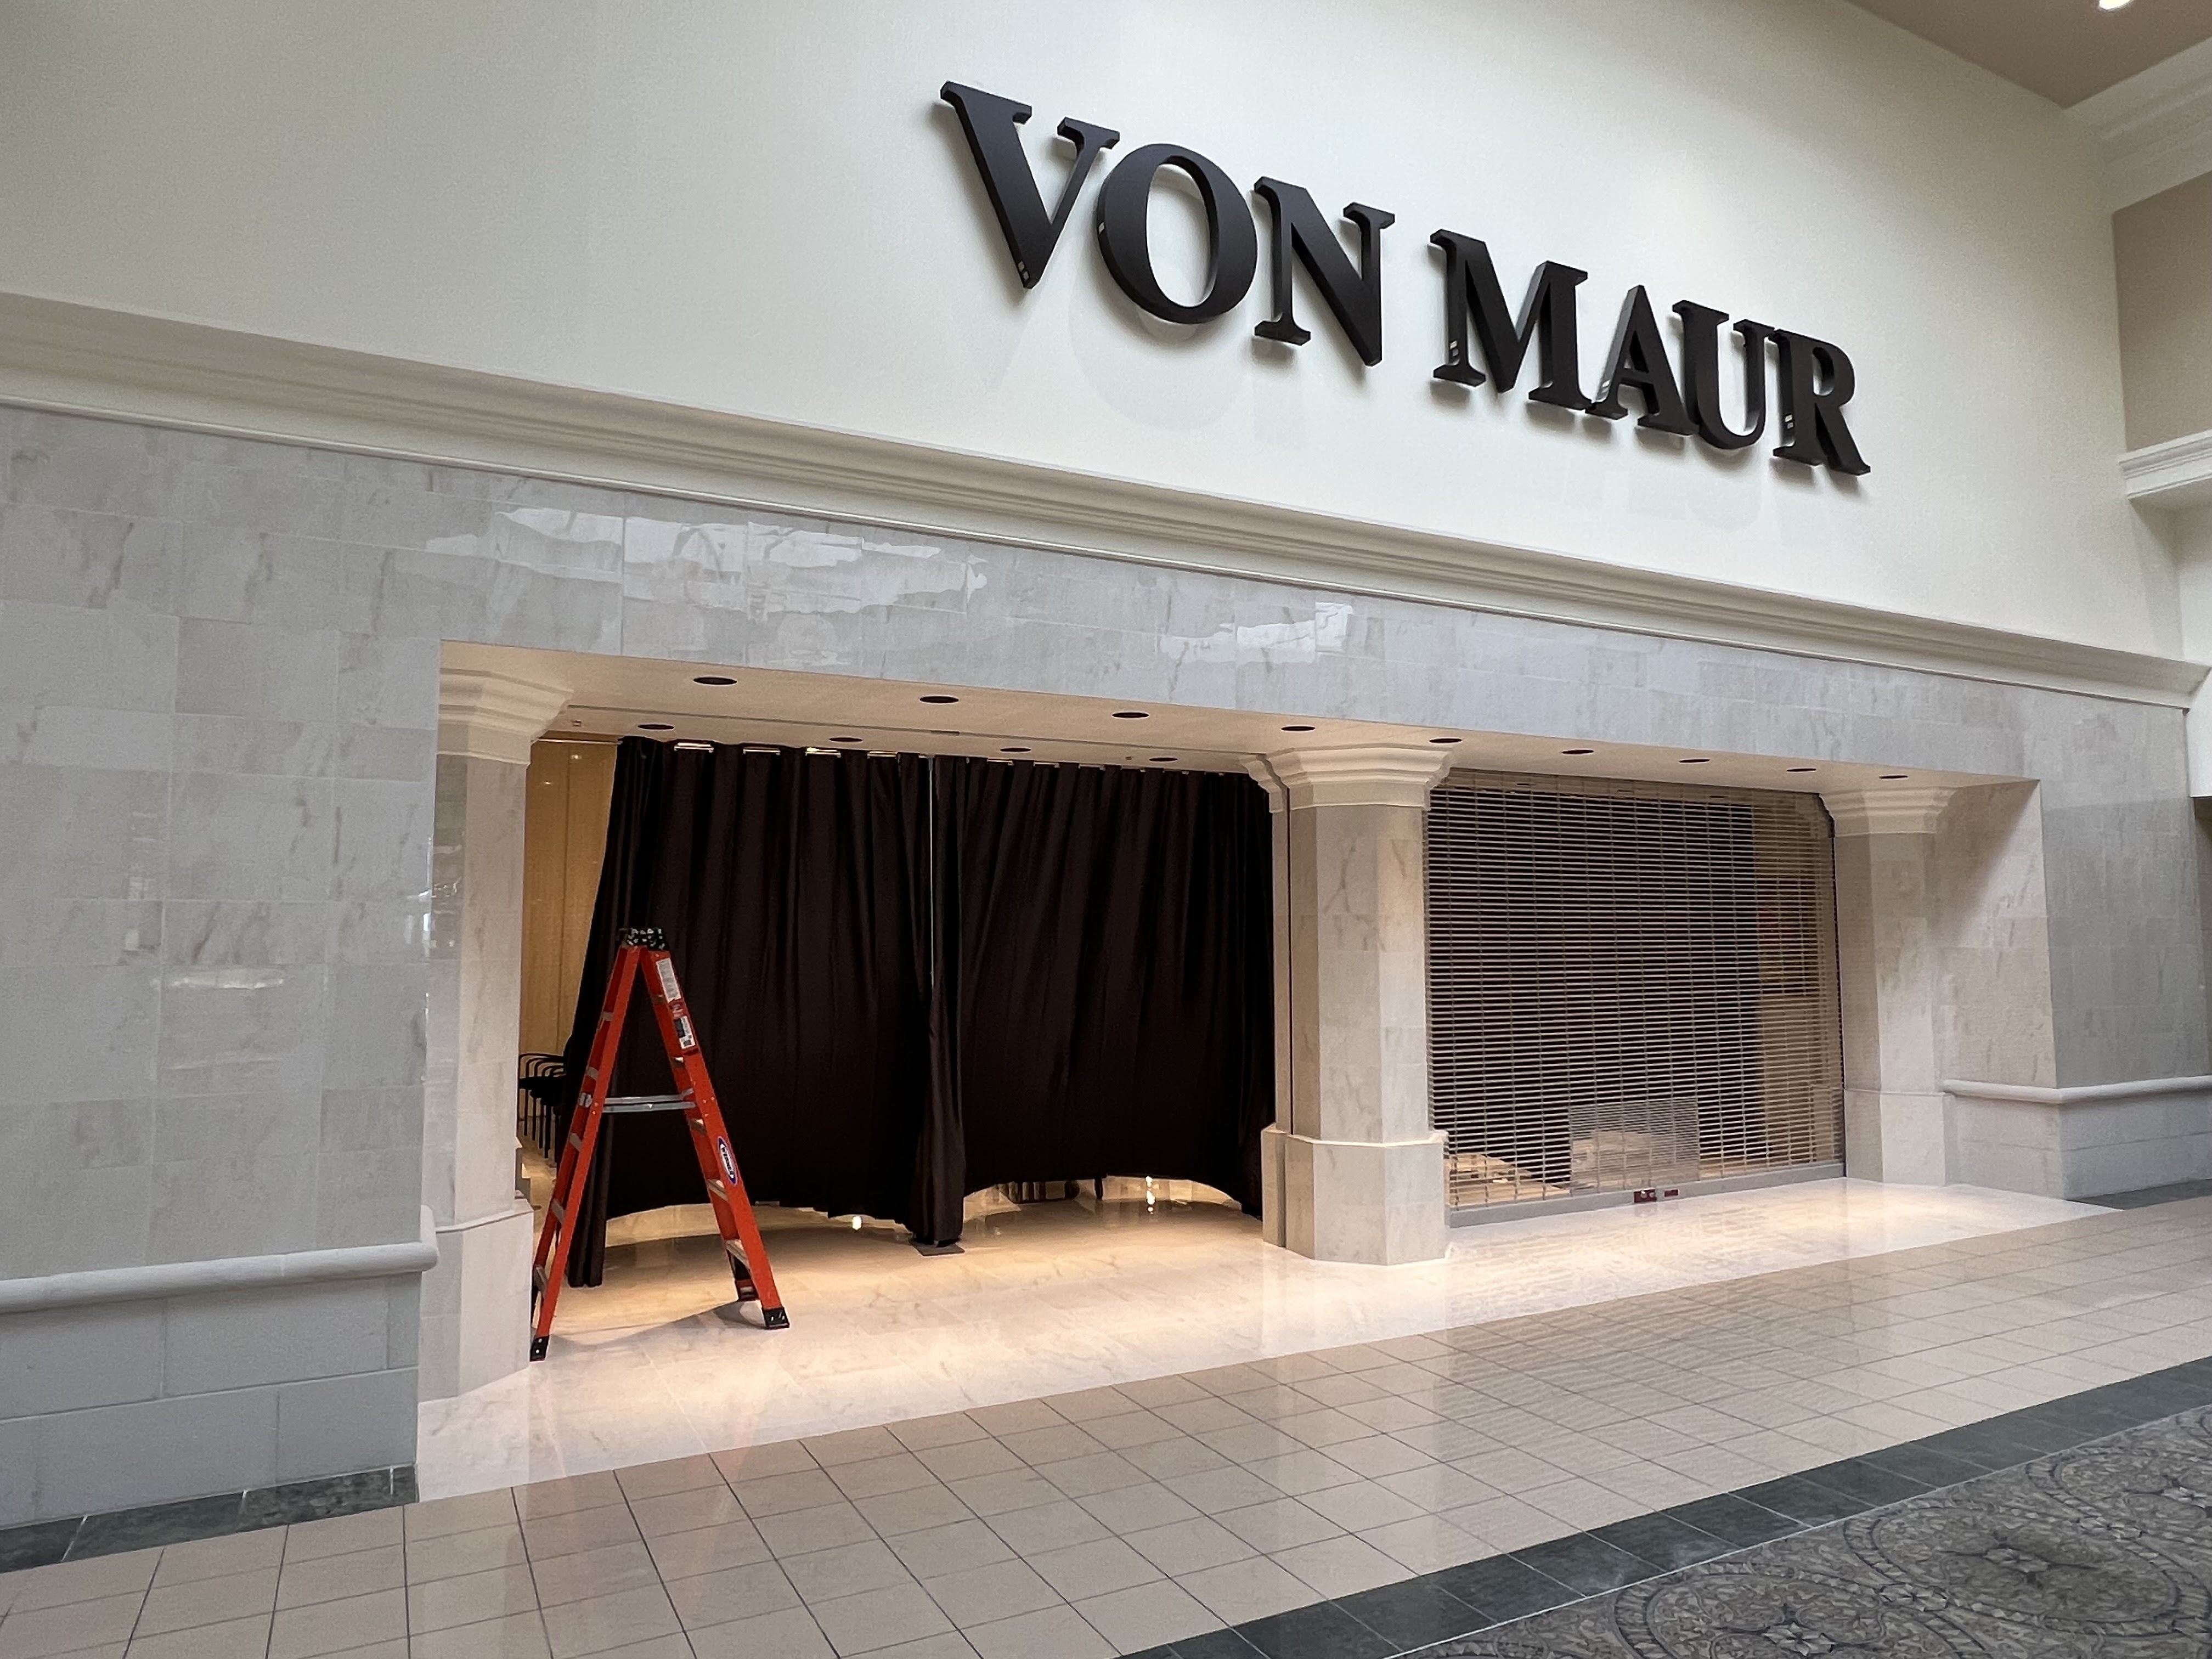 Van Maur at Woodland Mall reopens June 8